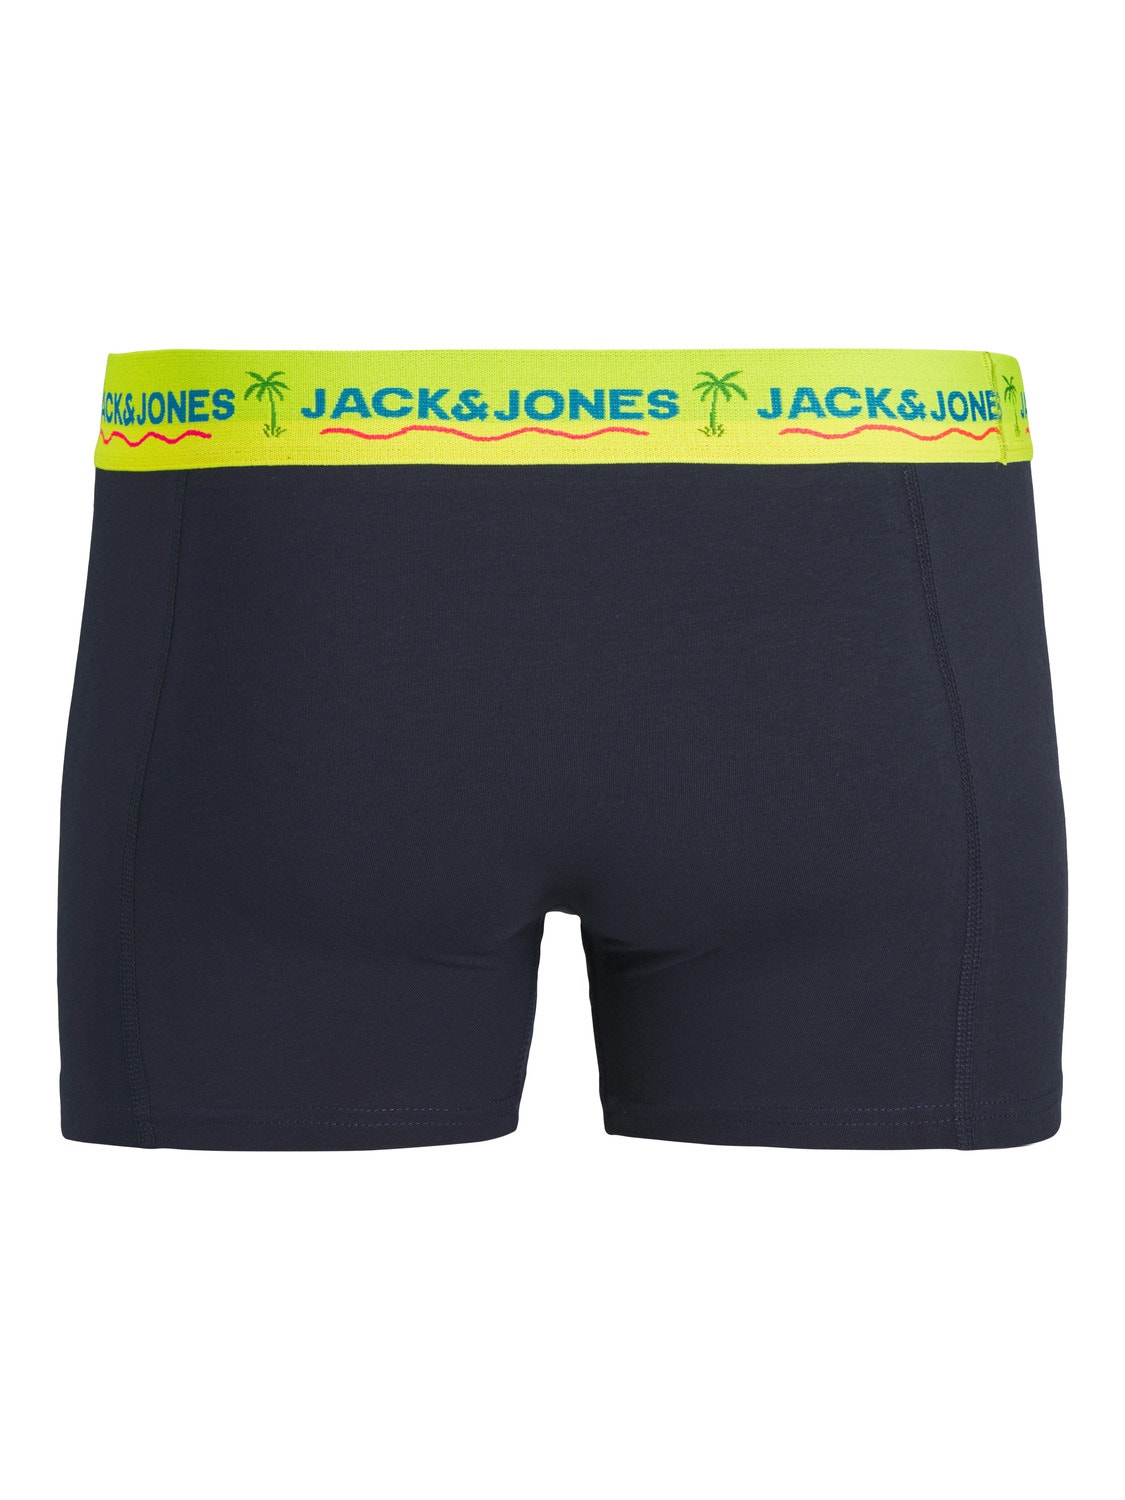 Jack & Jones 3-pack Trunks -Navy Blazer - 12250609